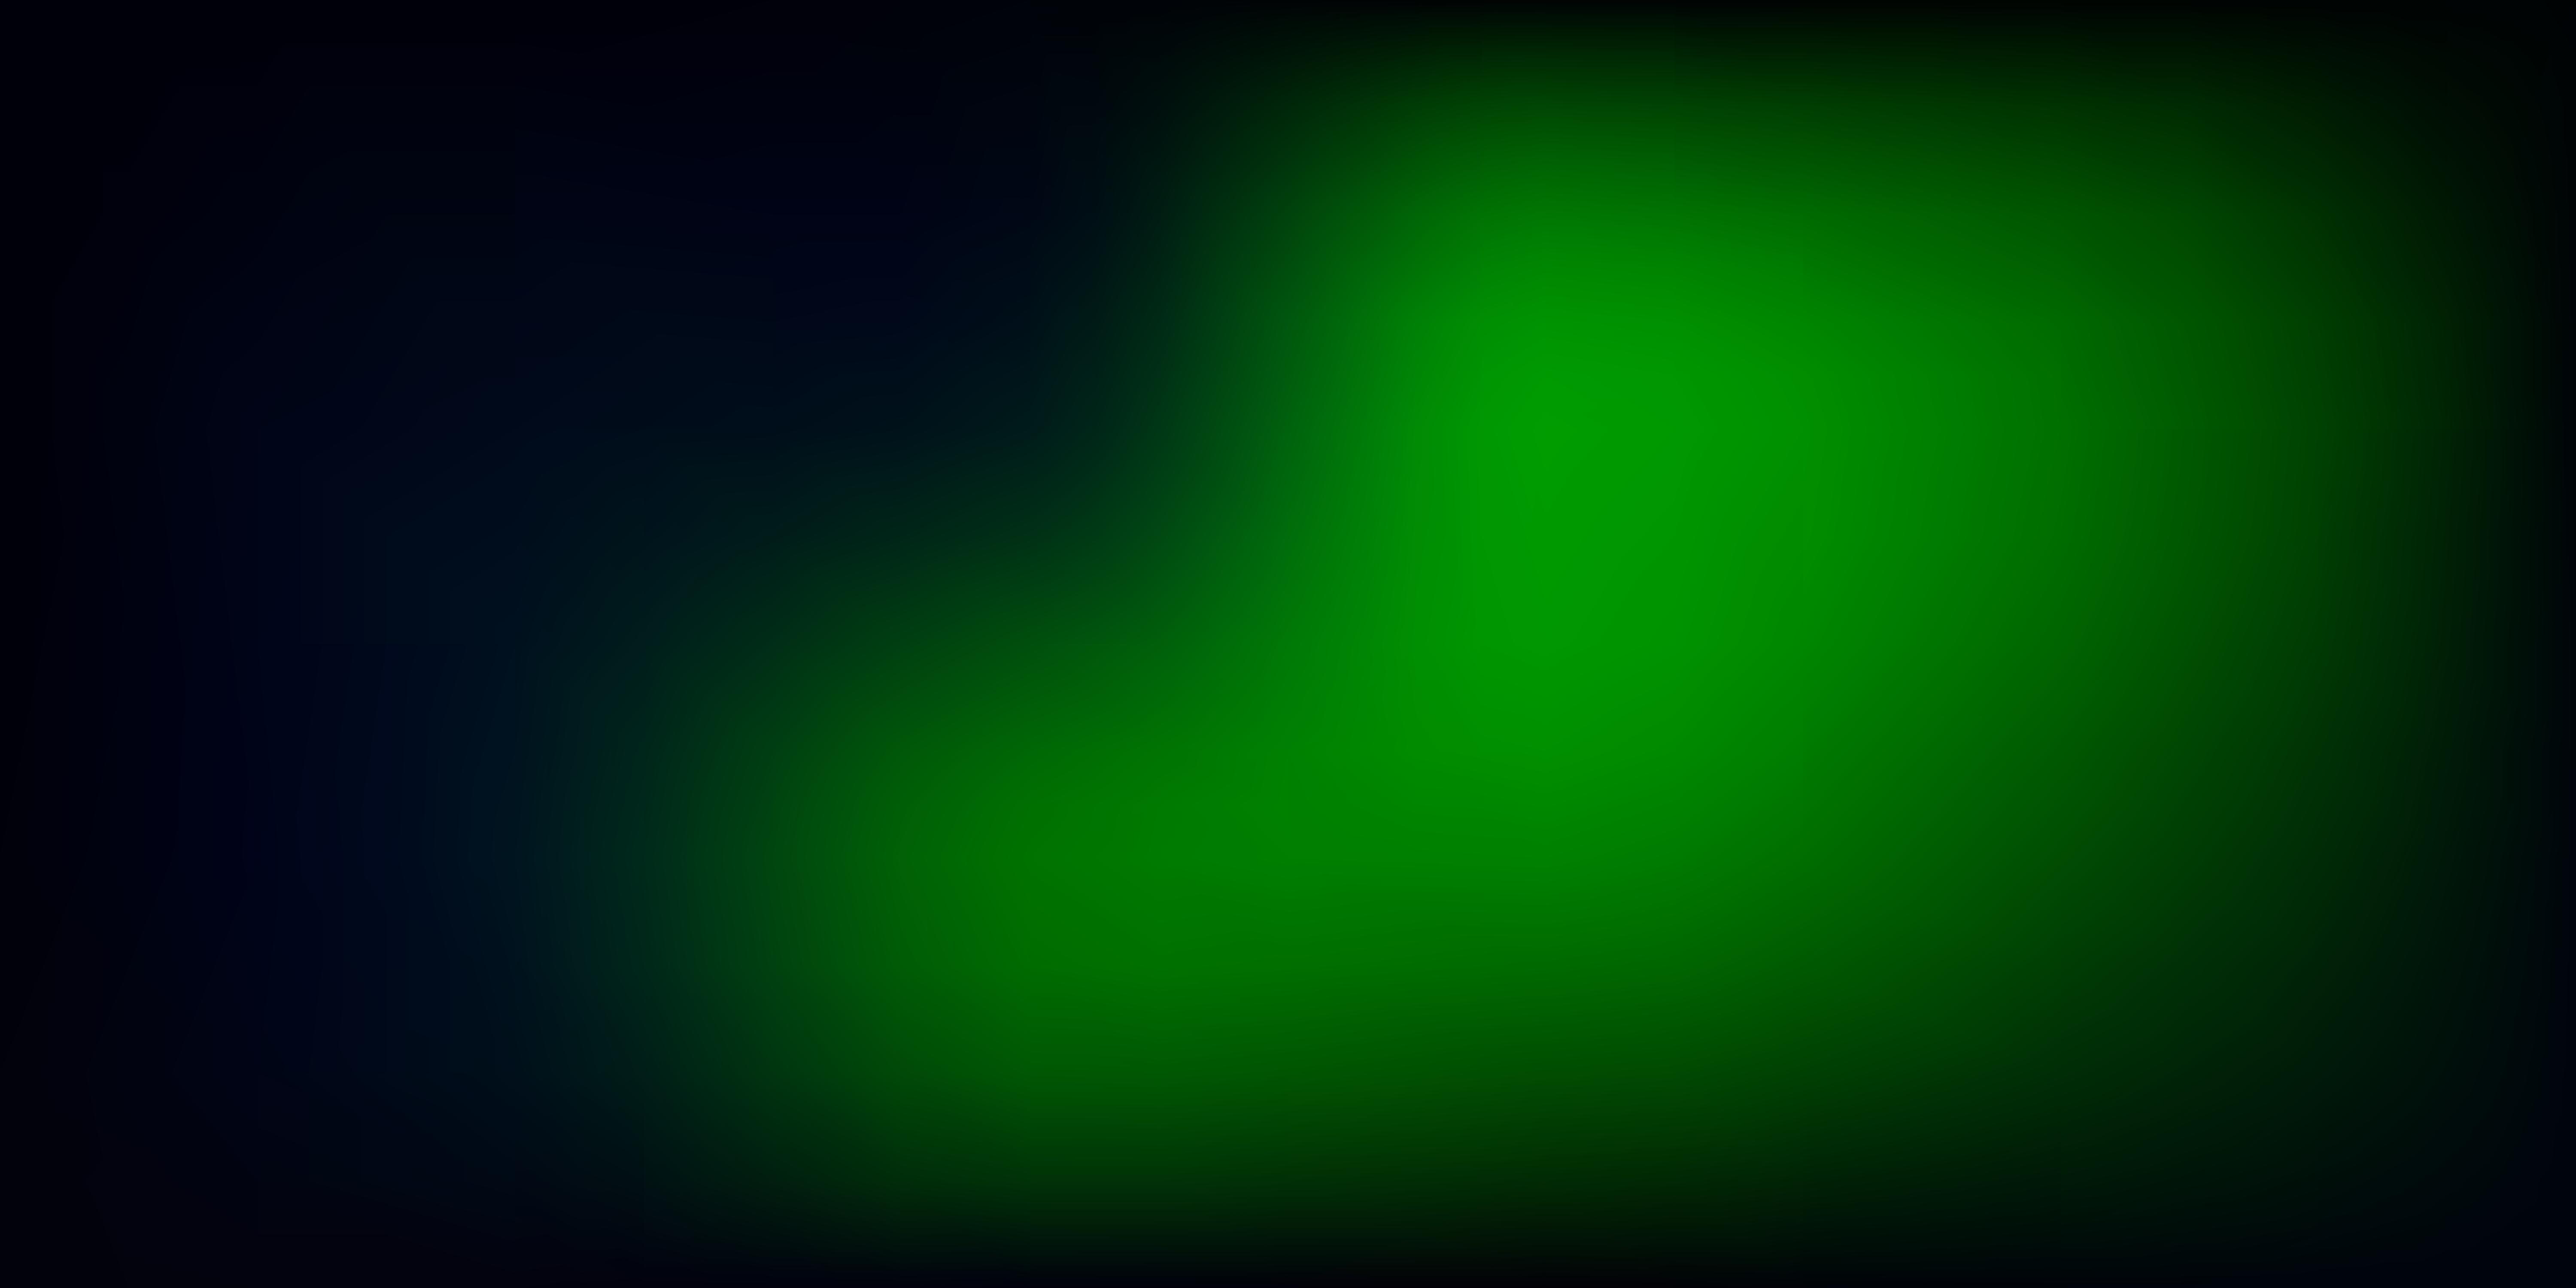 Dark Green vector abstract blur background. 1875422 Vector Art at Vecteezy